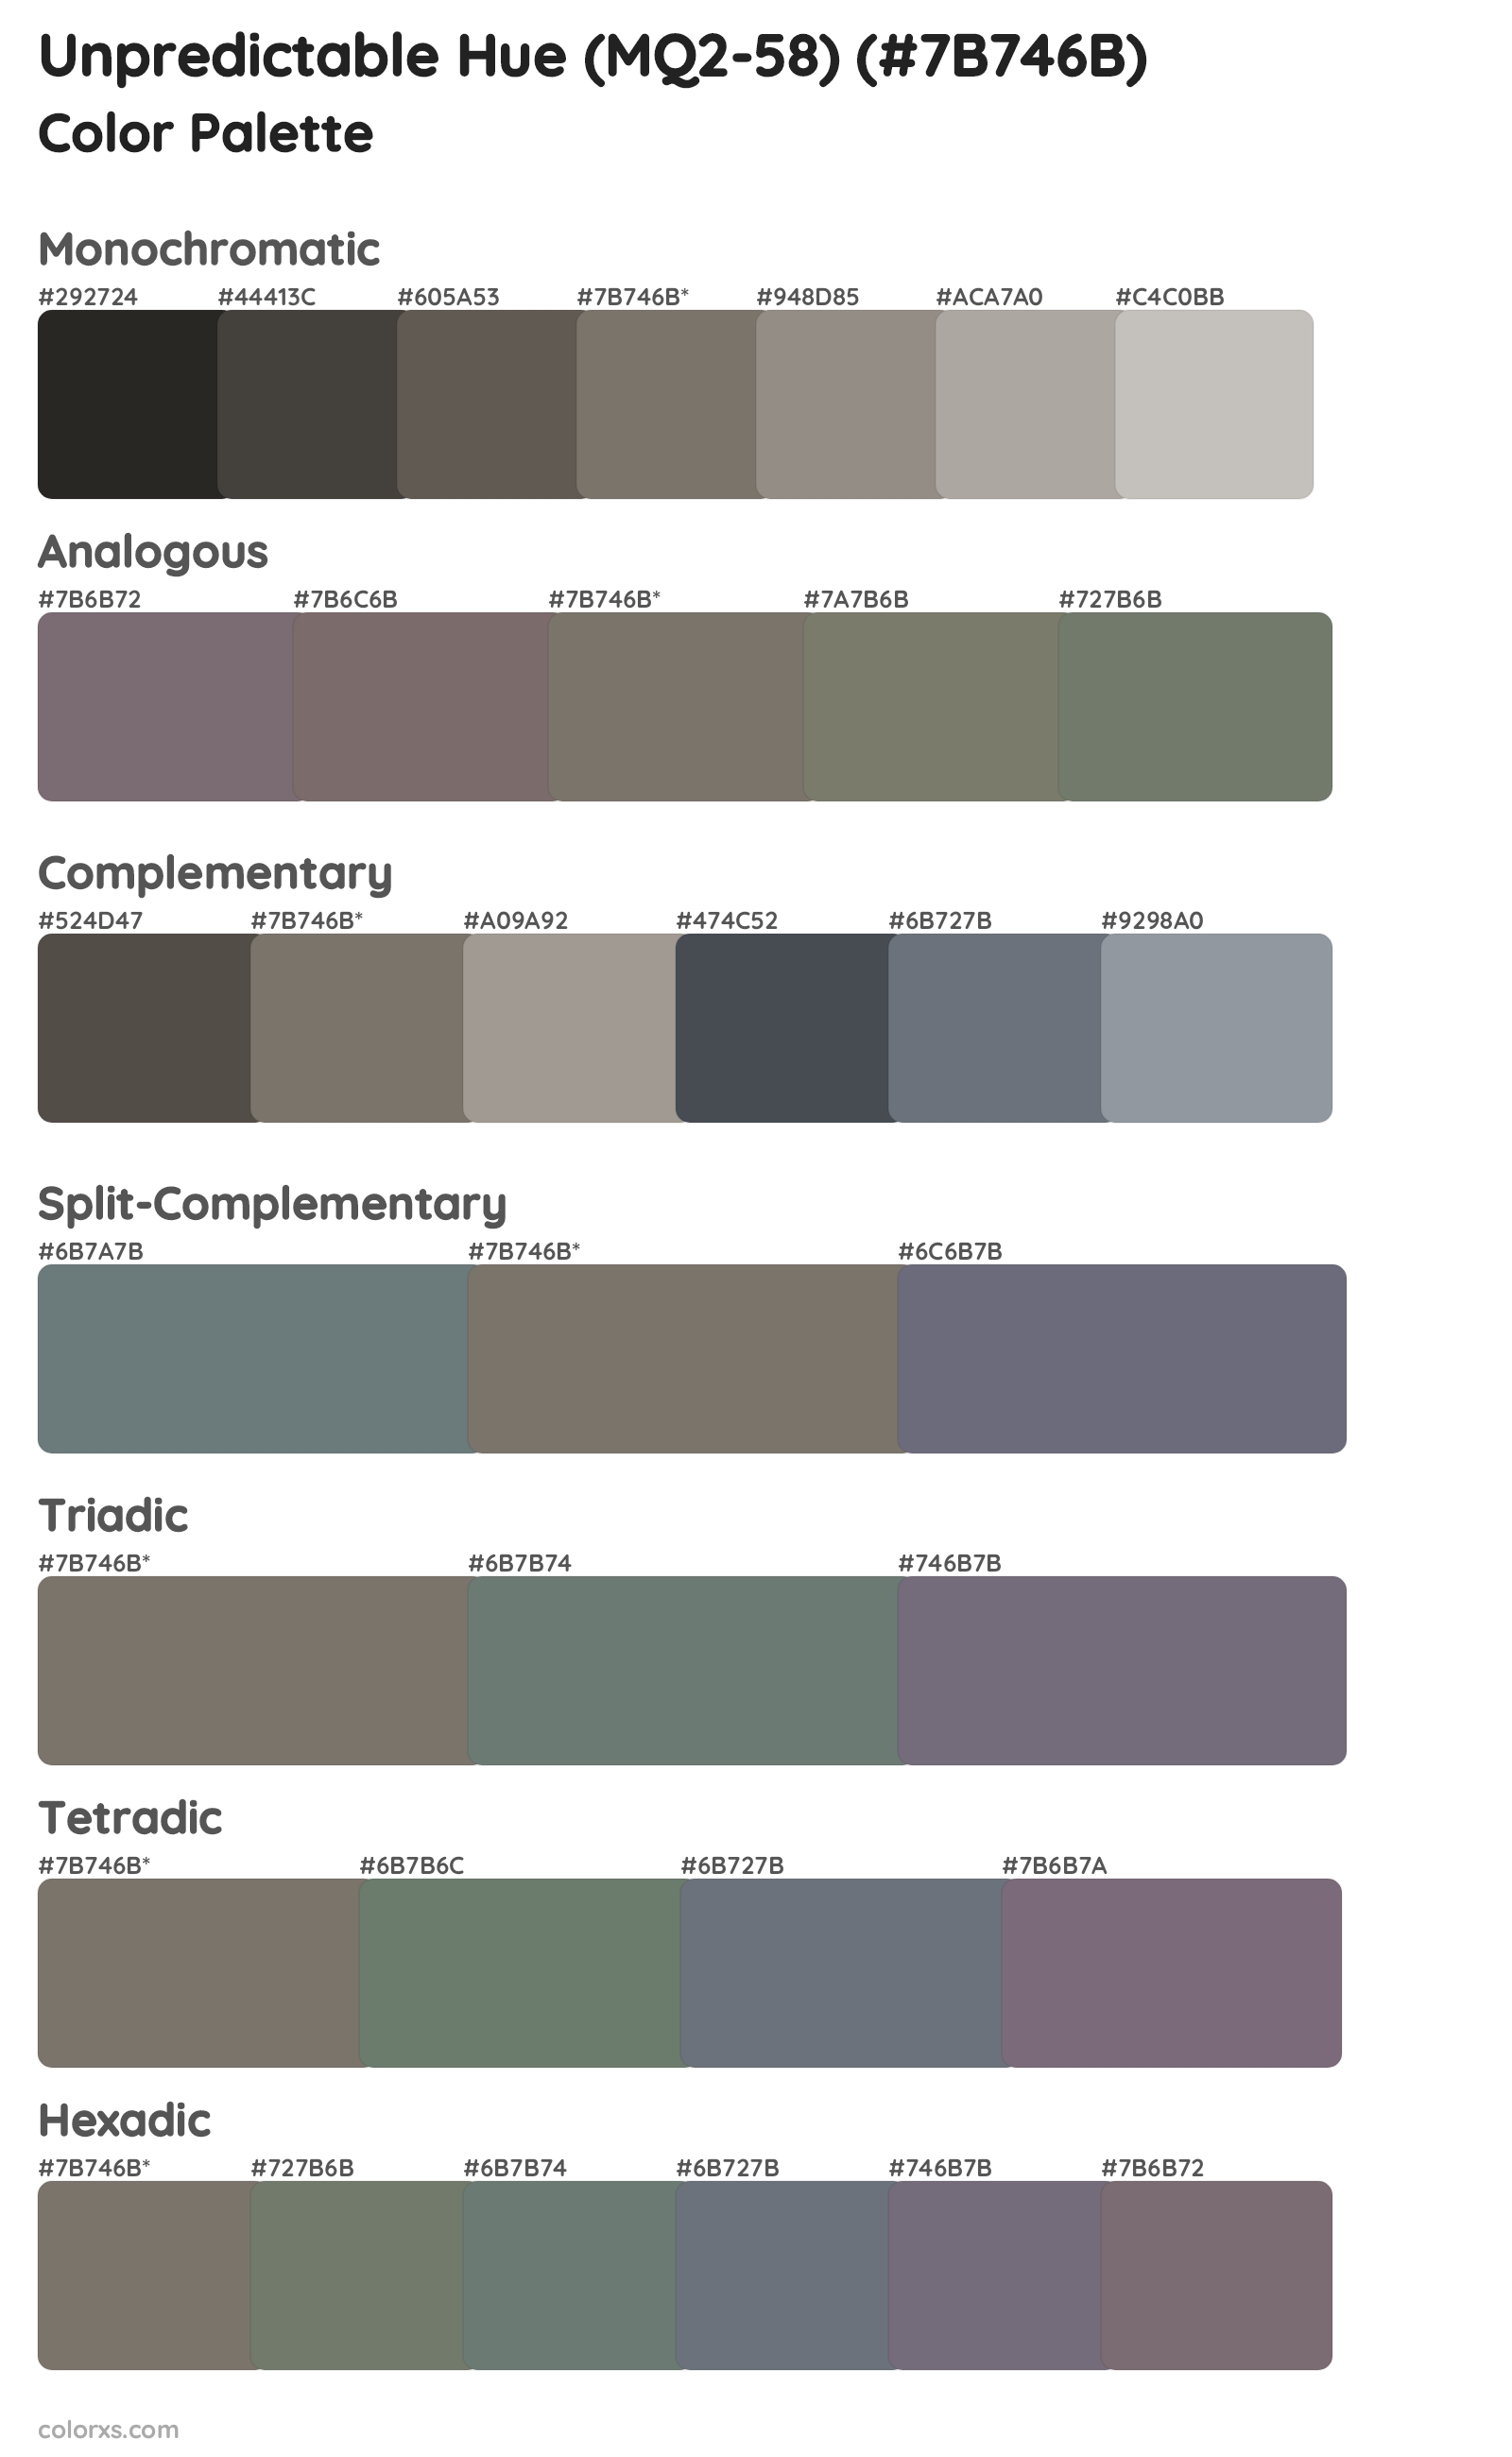 Unpredictable Hue (MQ2-58) Color Scheme Palettes